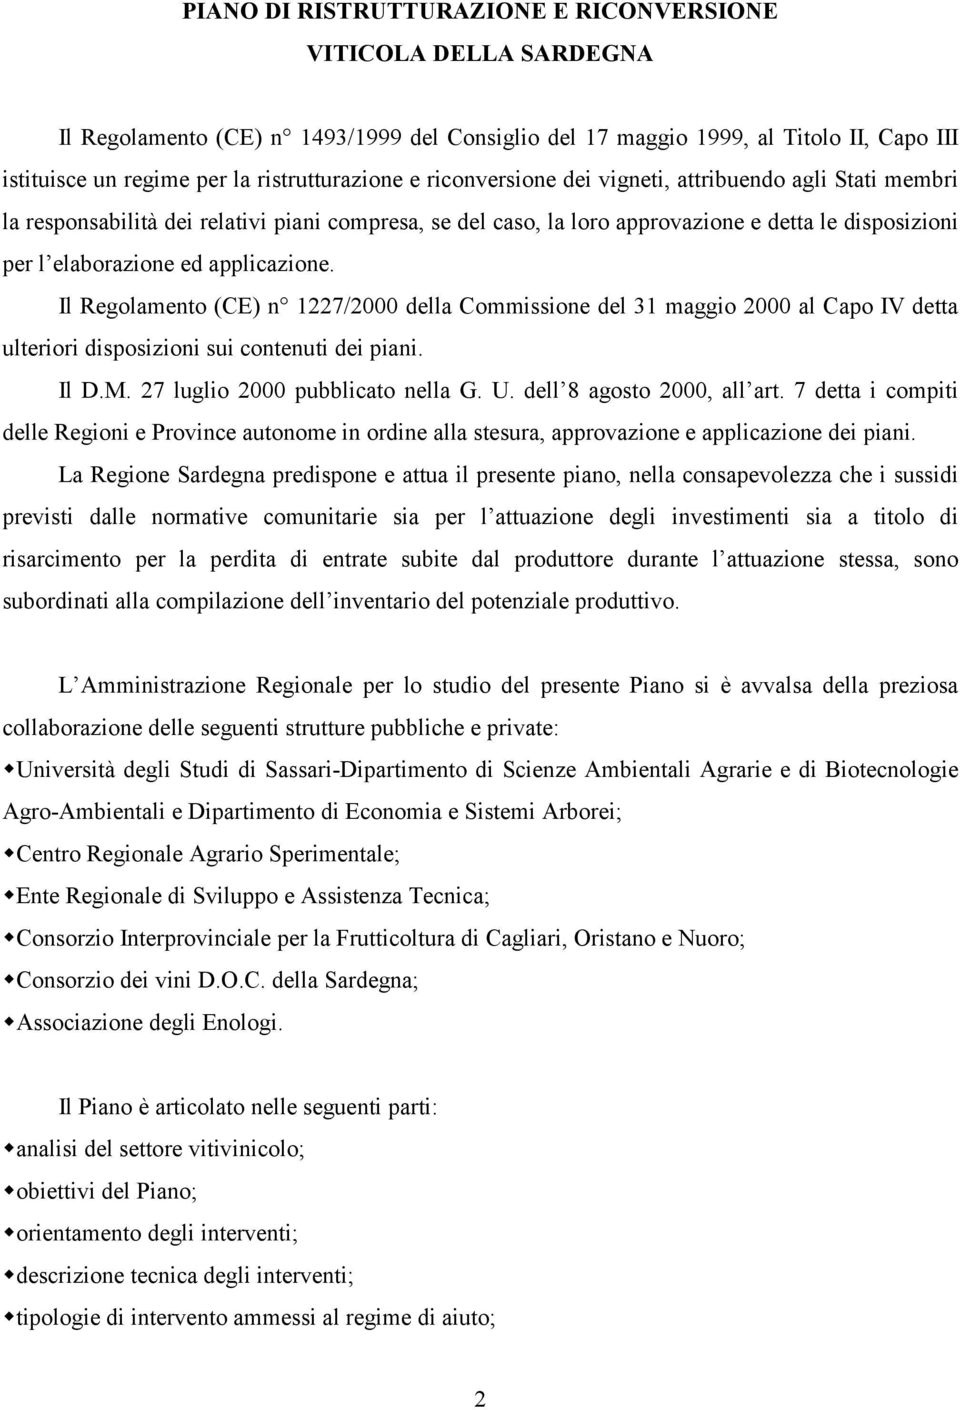 Il Regolamento (CE) n 1227/2000 della Commissione del 31 maggio 2000 al Capo IV detta ulteriori disposizioni sui contenuti dei piani. Il D.M. 27 luglio 2000 pubblicato nella G. U.